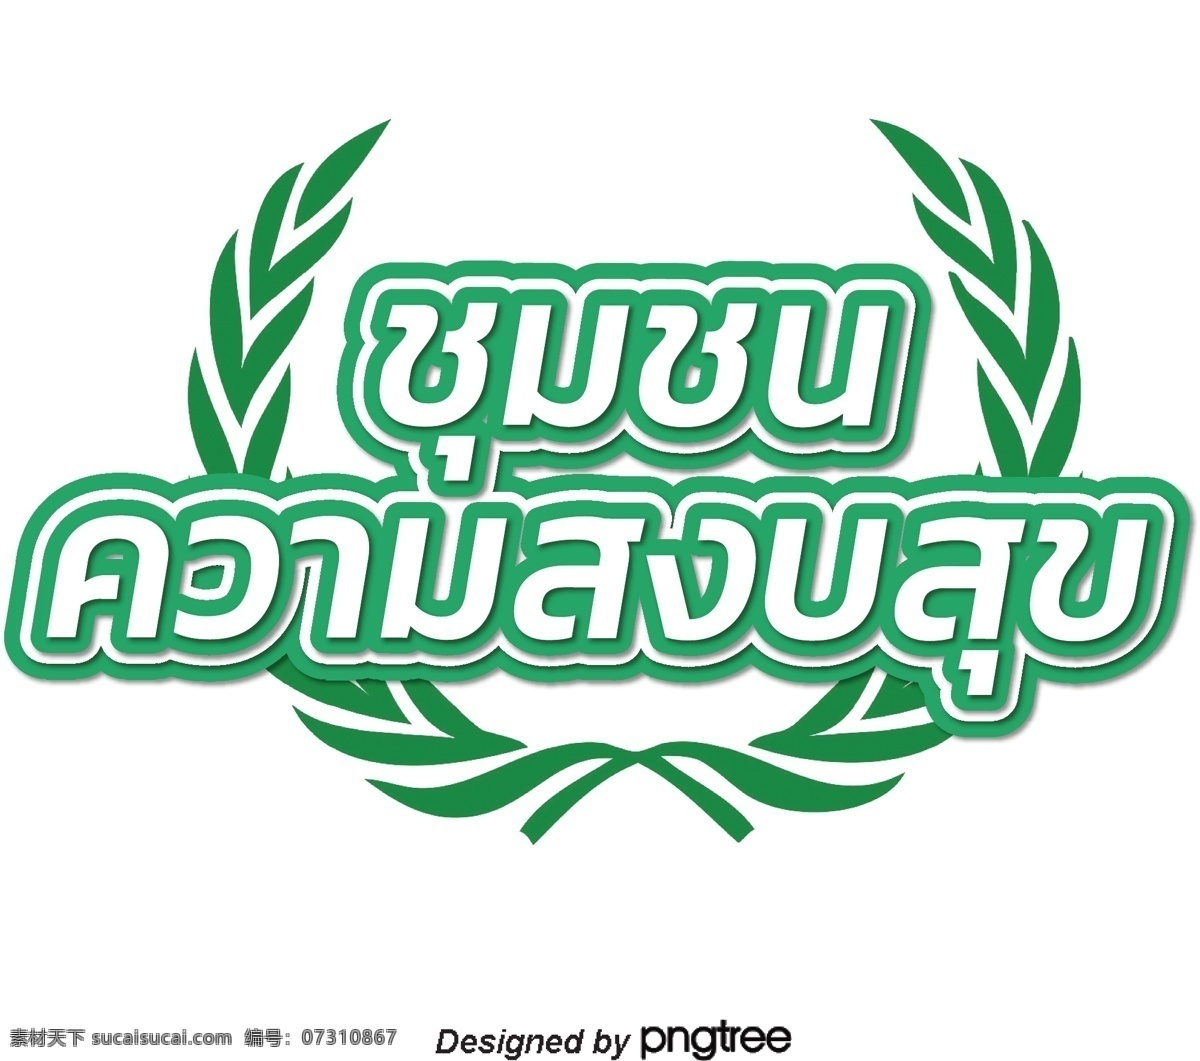 泰国 白色 文本 字体 幸福 边缘 绿色 白边绿